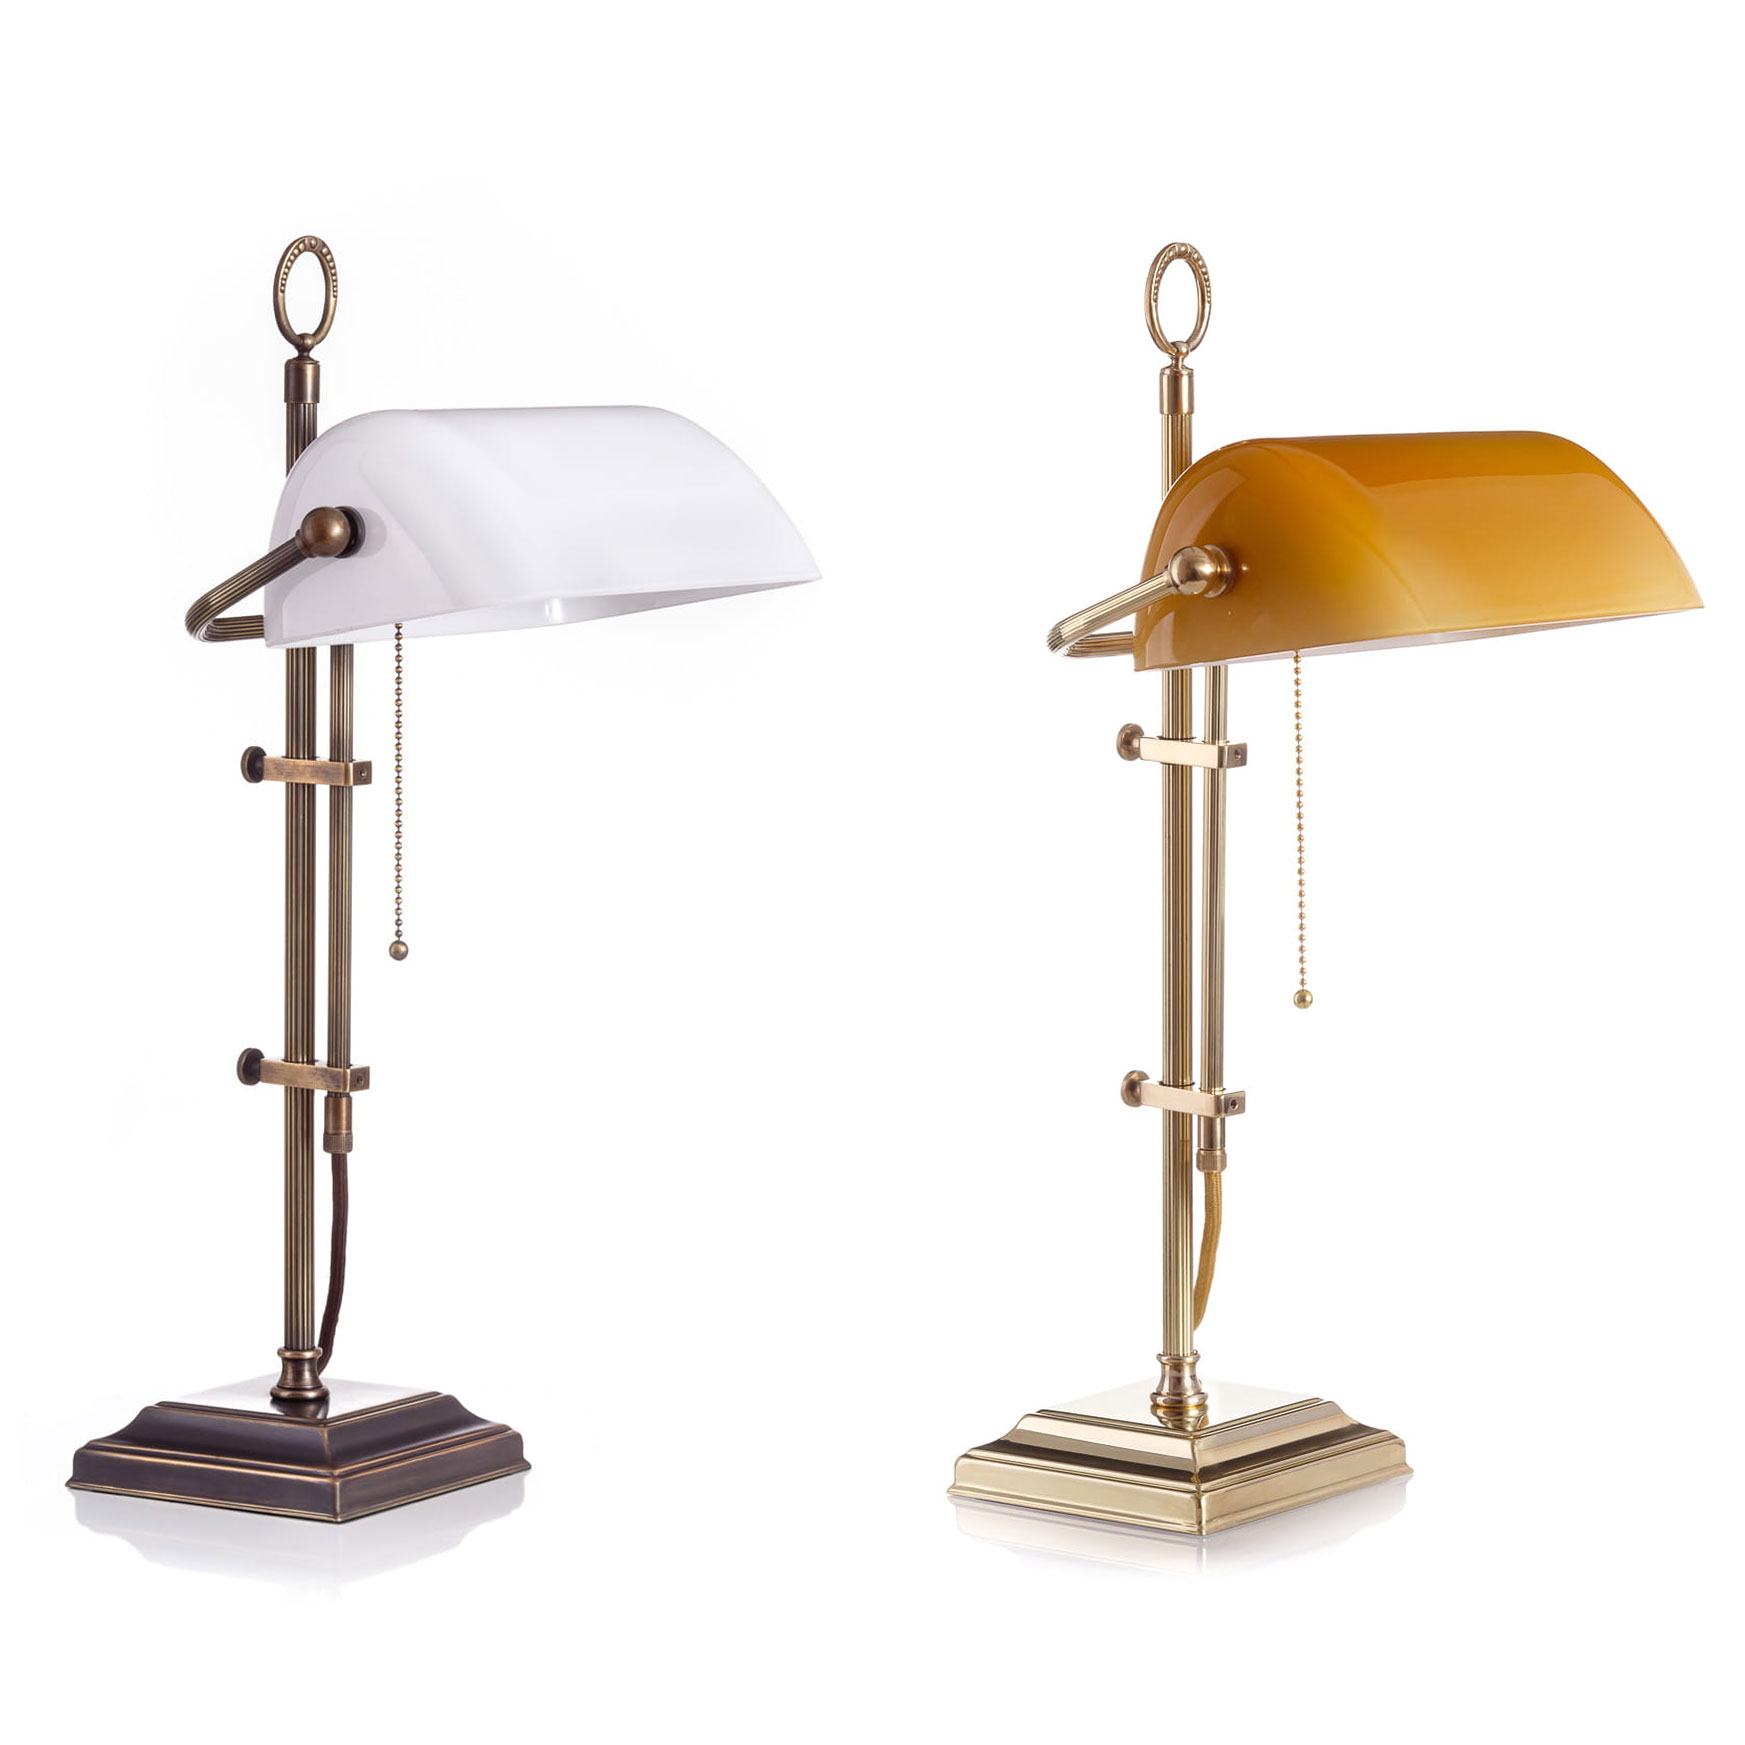 Banker’s Lamp – klassische Schreibtischleuchte mit Glasschirm: Mit weißem bzw. Cognac-farbenen Glasschirm, Messingteile antik patiniert, bzw. poliert